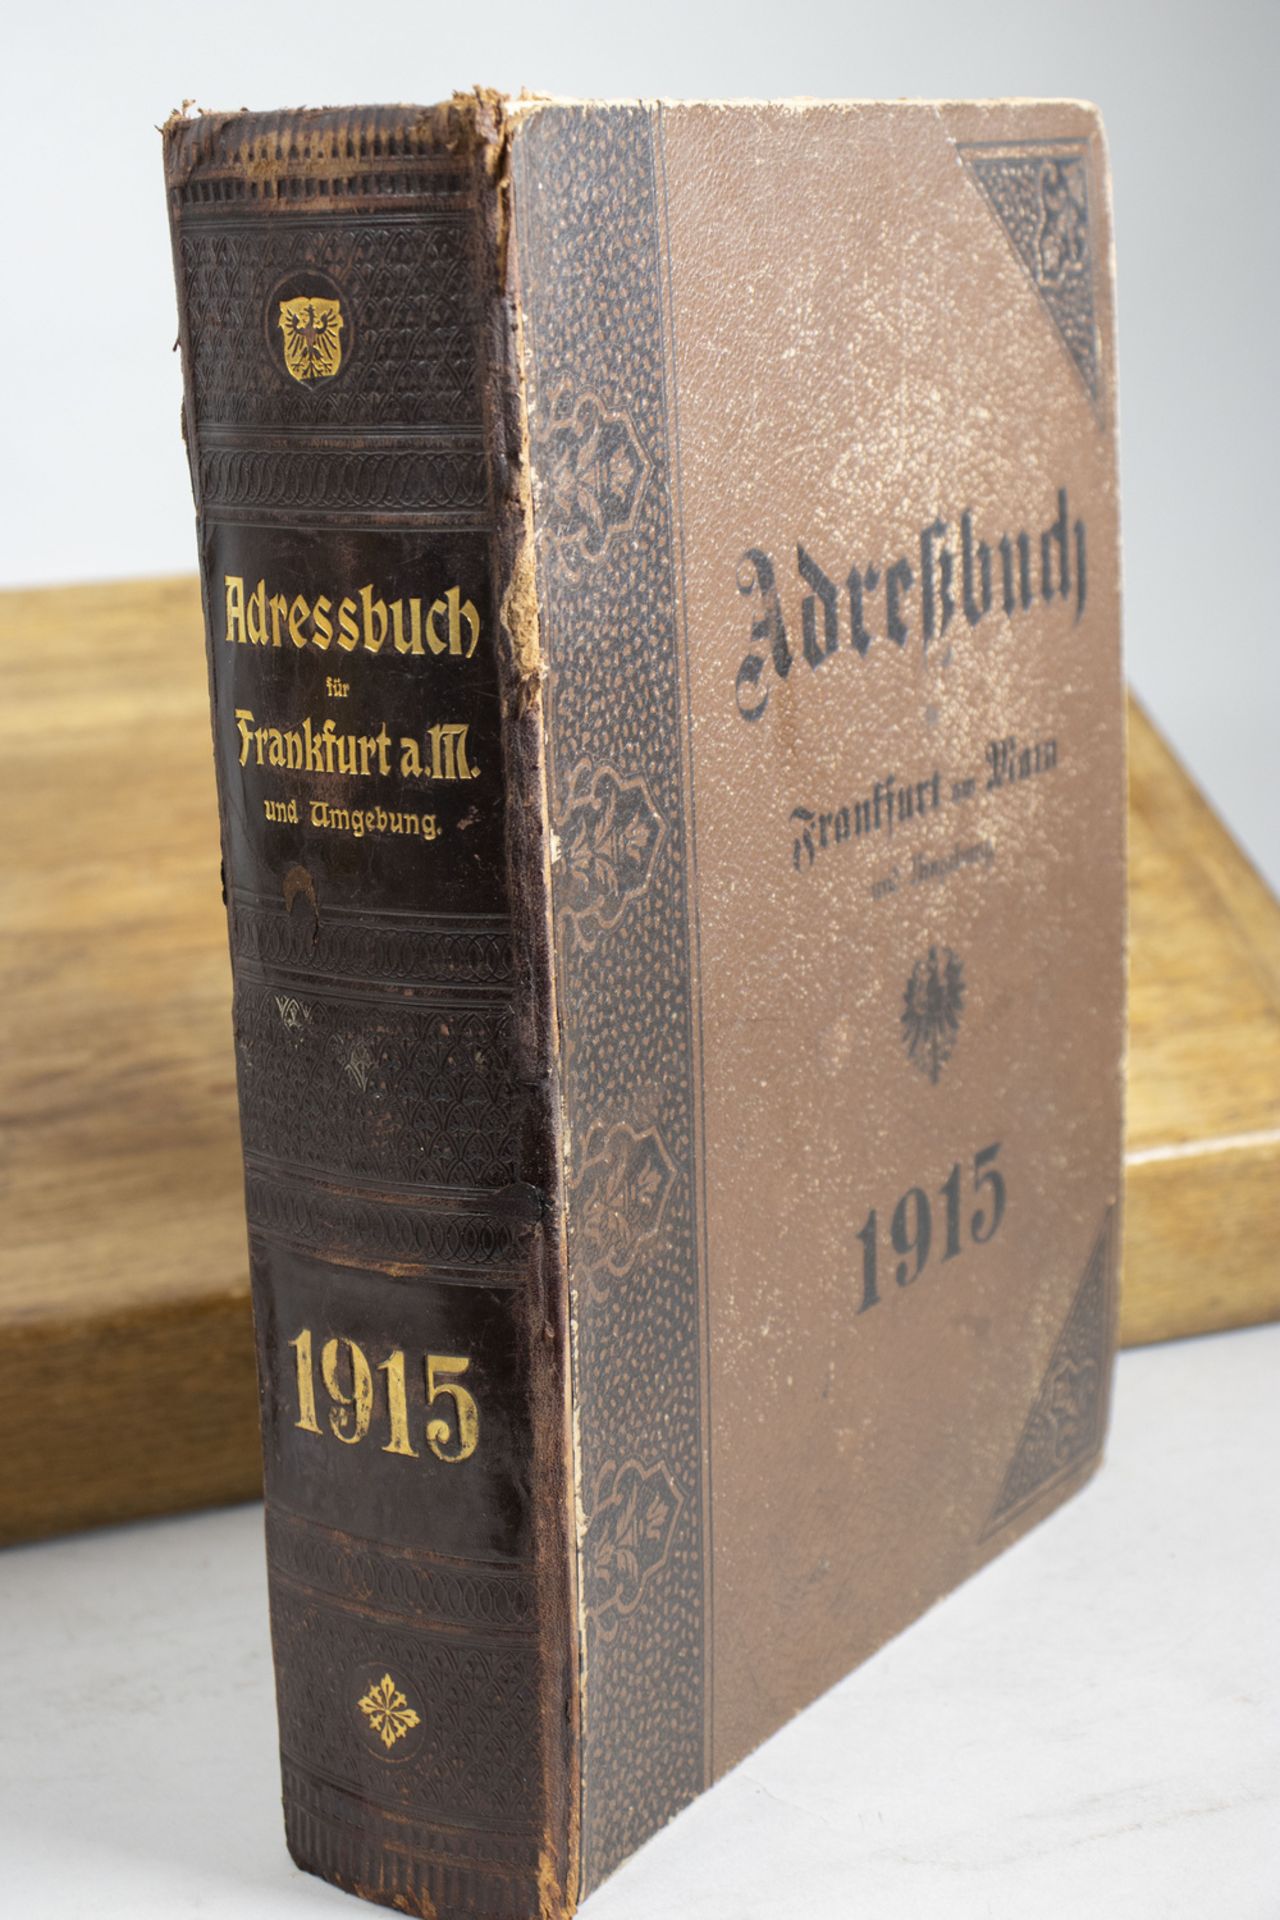 Adressbuch Frankfurt am Main / An address book, 1915